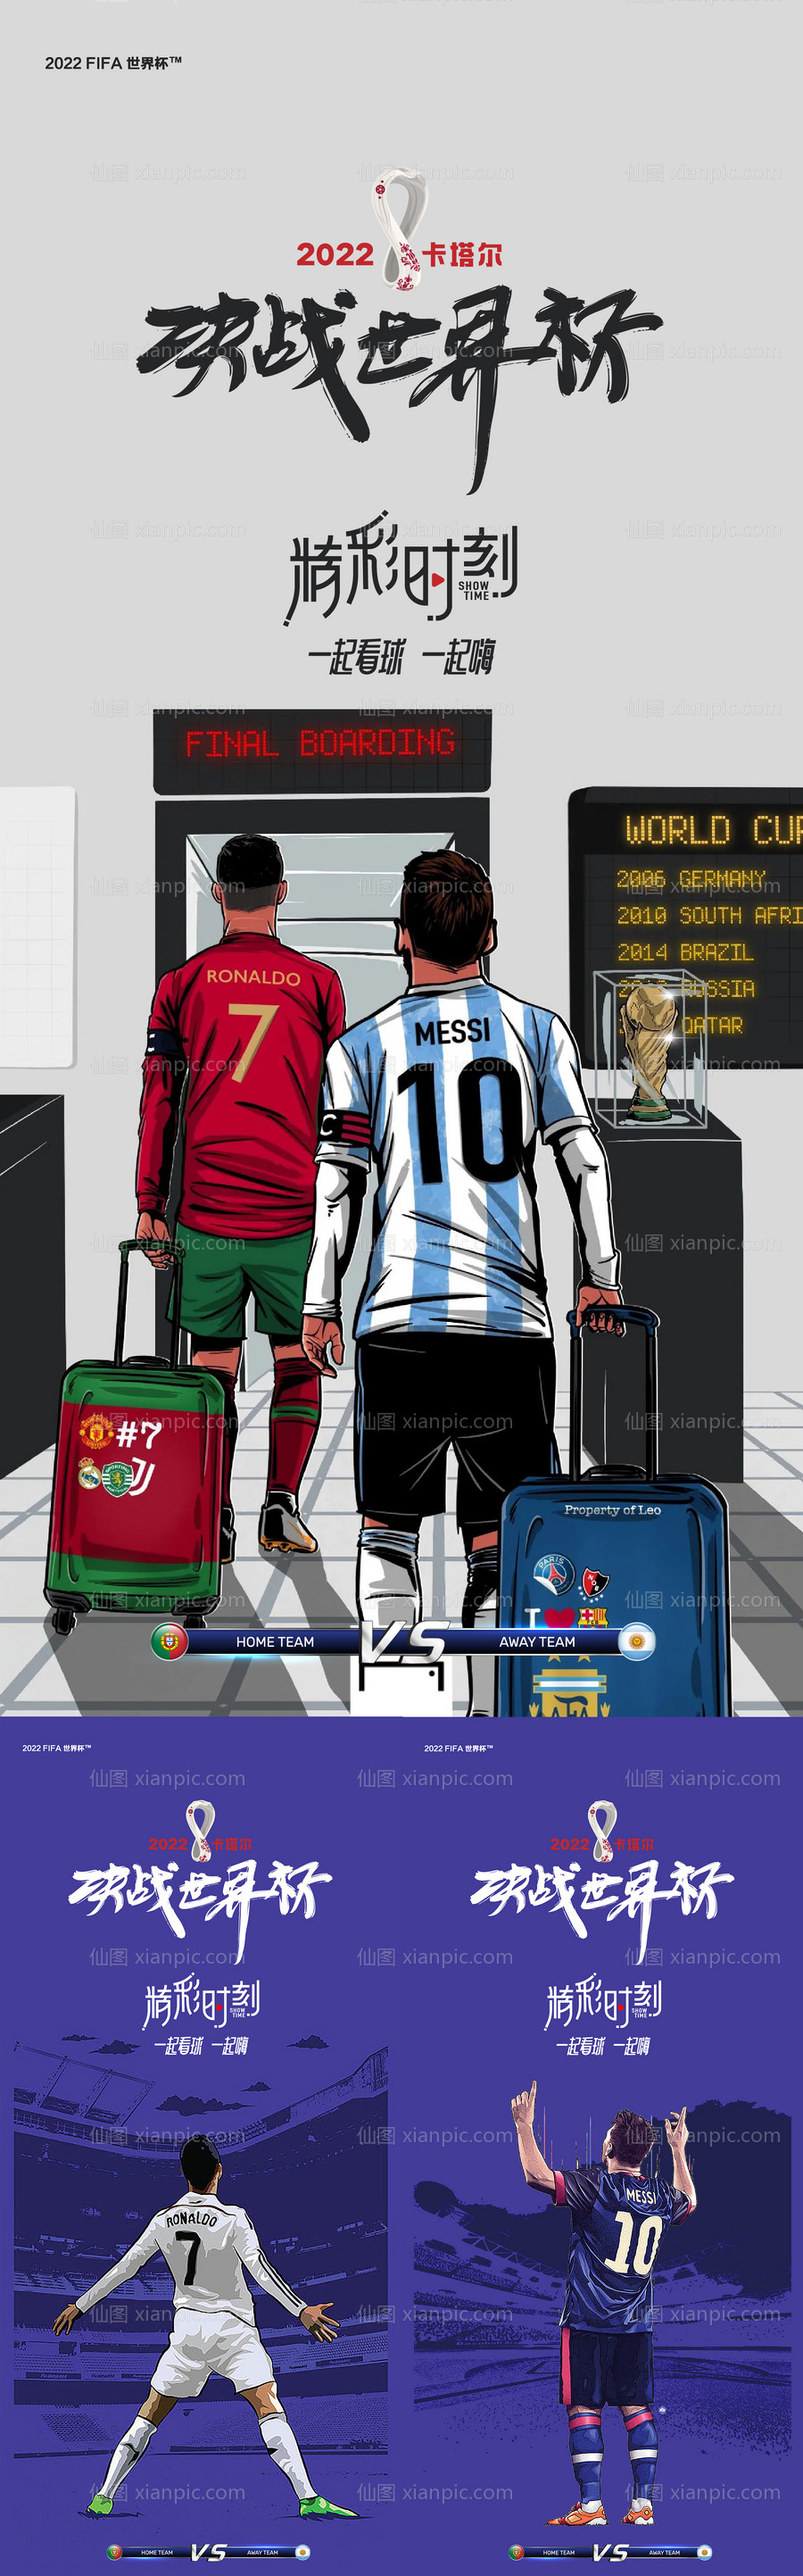 素材乐-世界杯球星海报